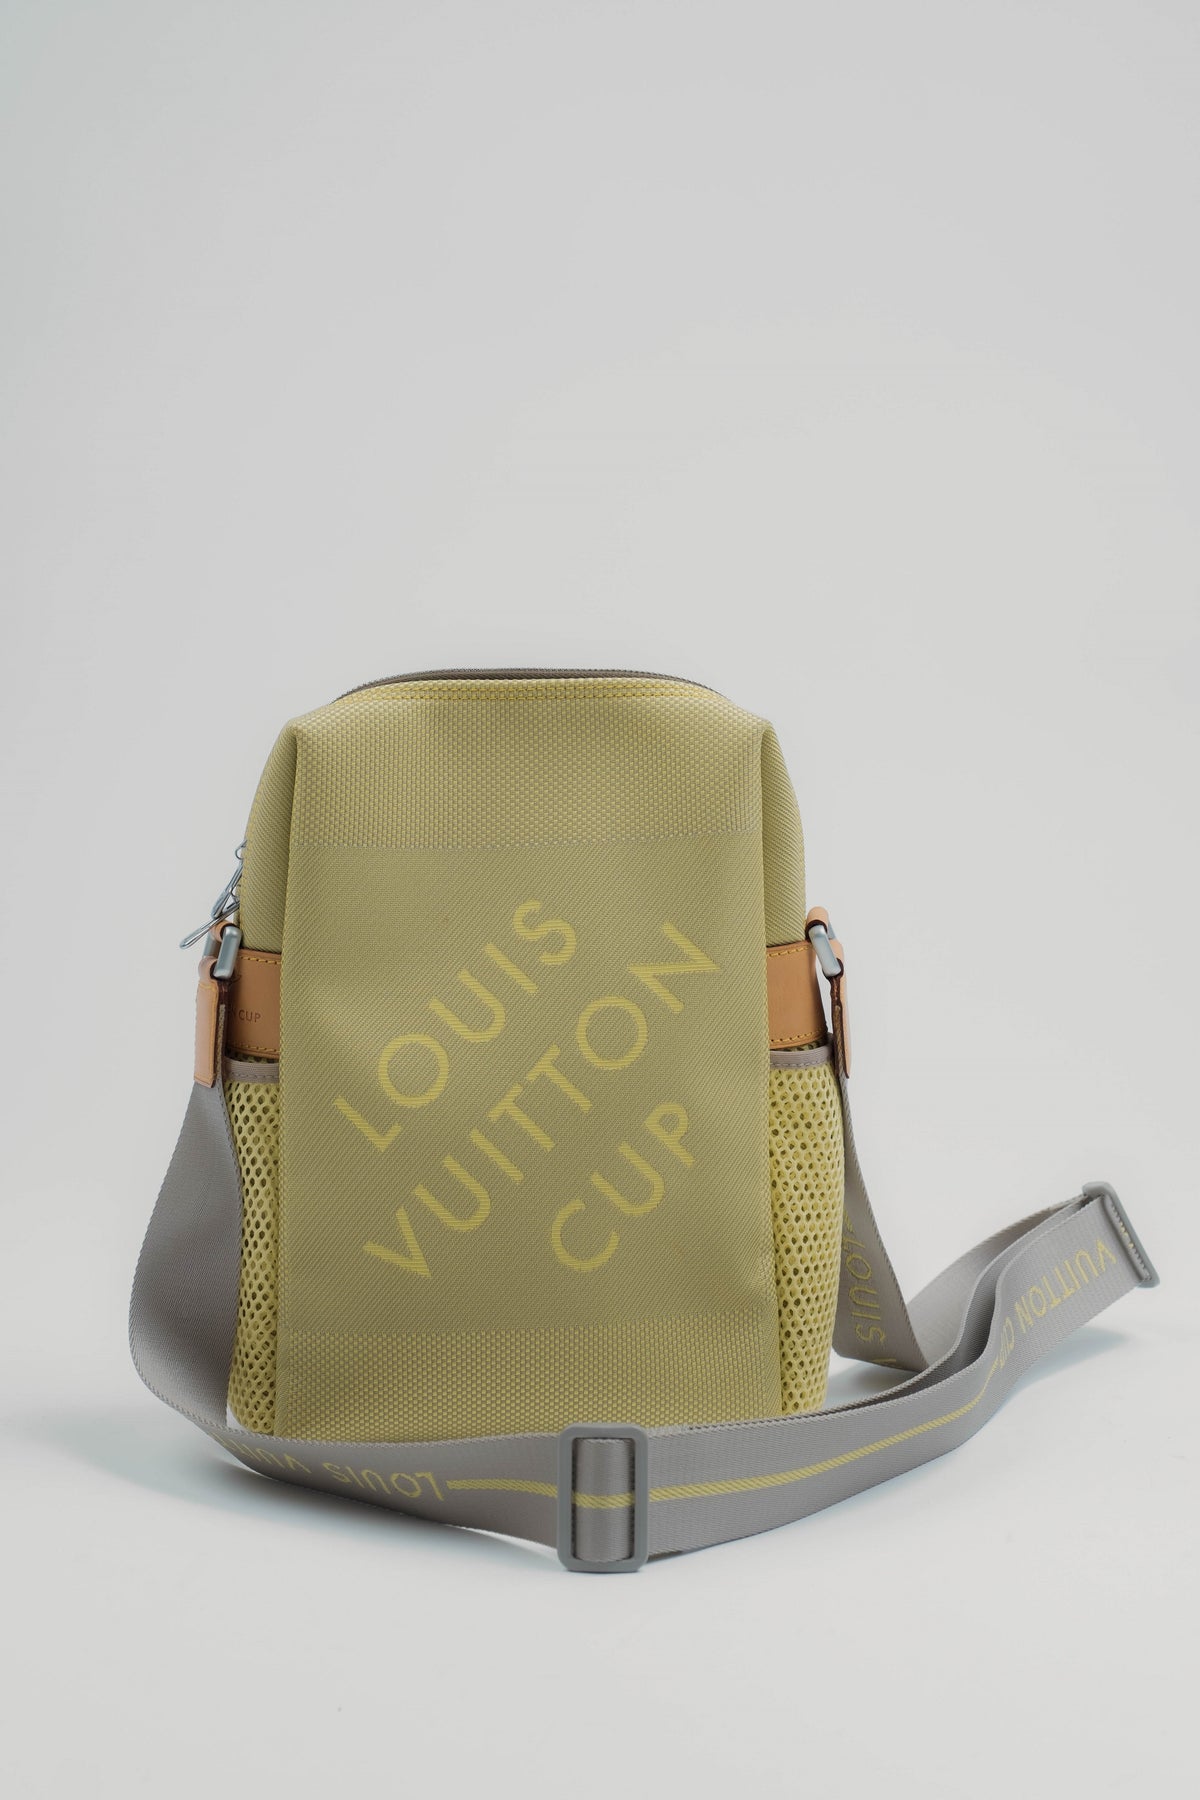 Vintage CHANEL Shoulder Bag – Weatherly Design